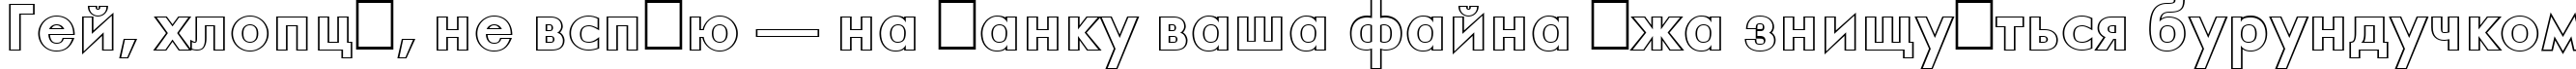 Пример написания шрифтом a_FuturaOrtoOtl Bold текста на украинском